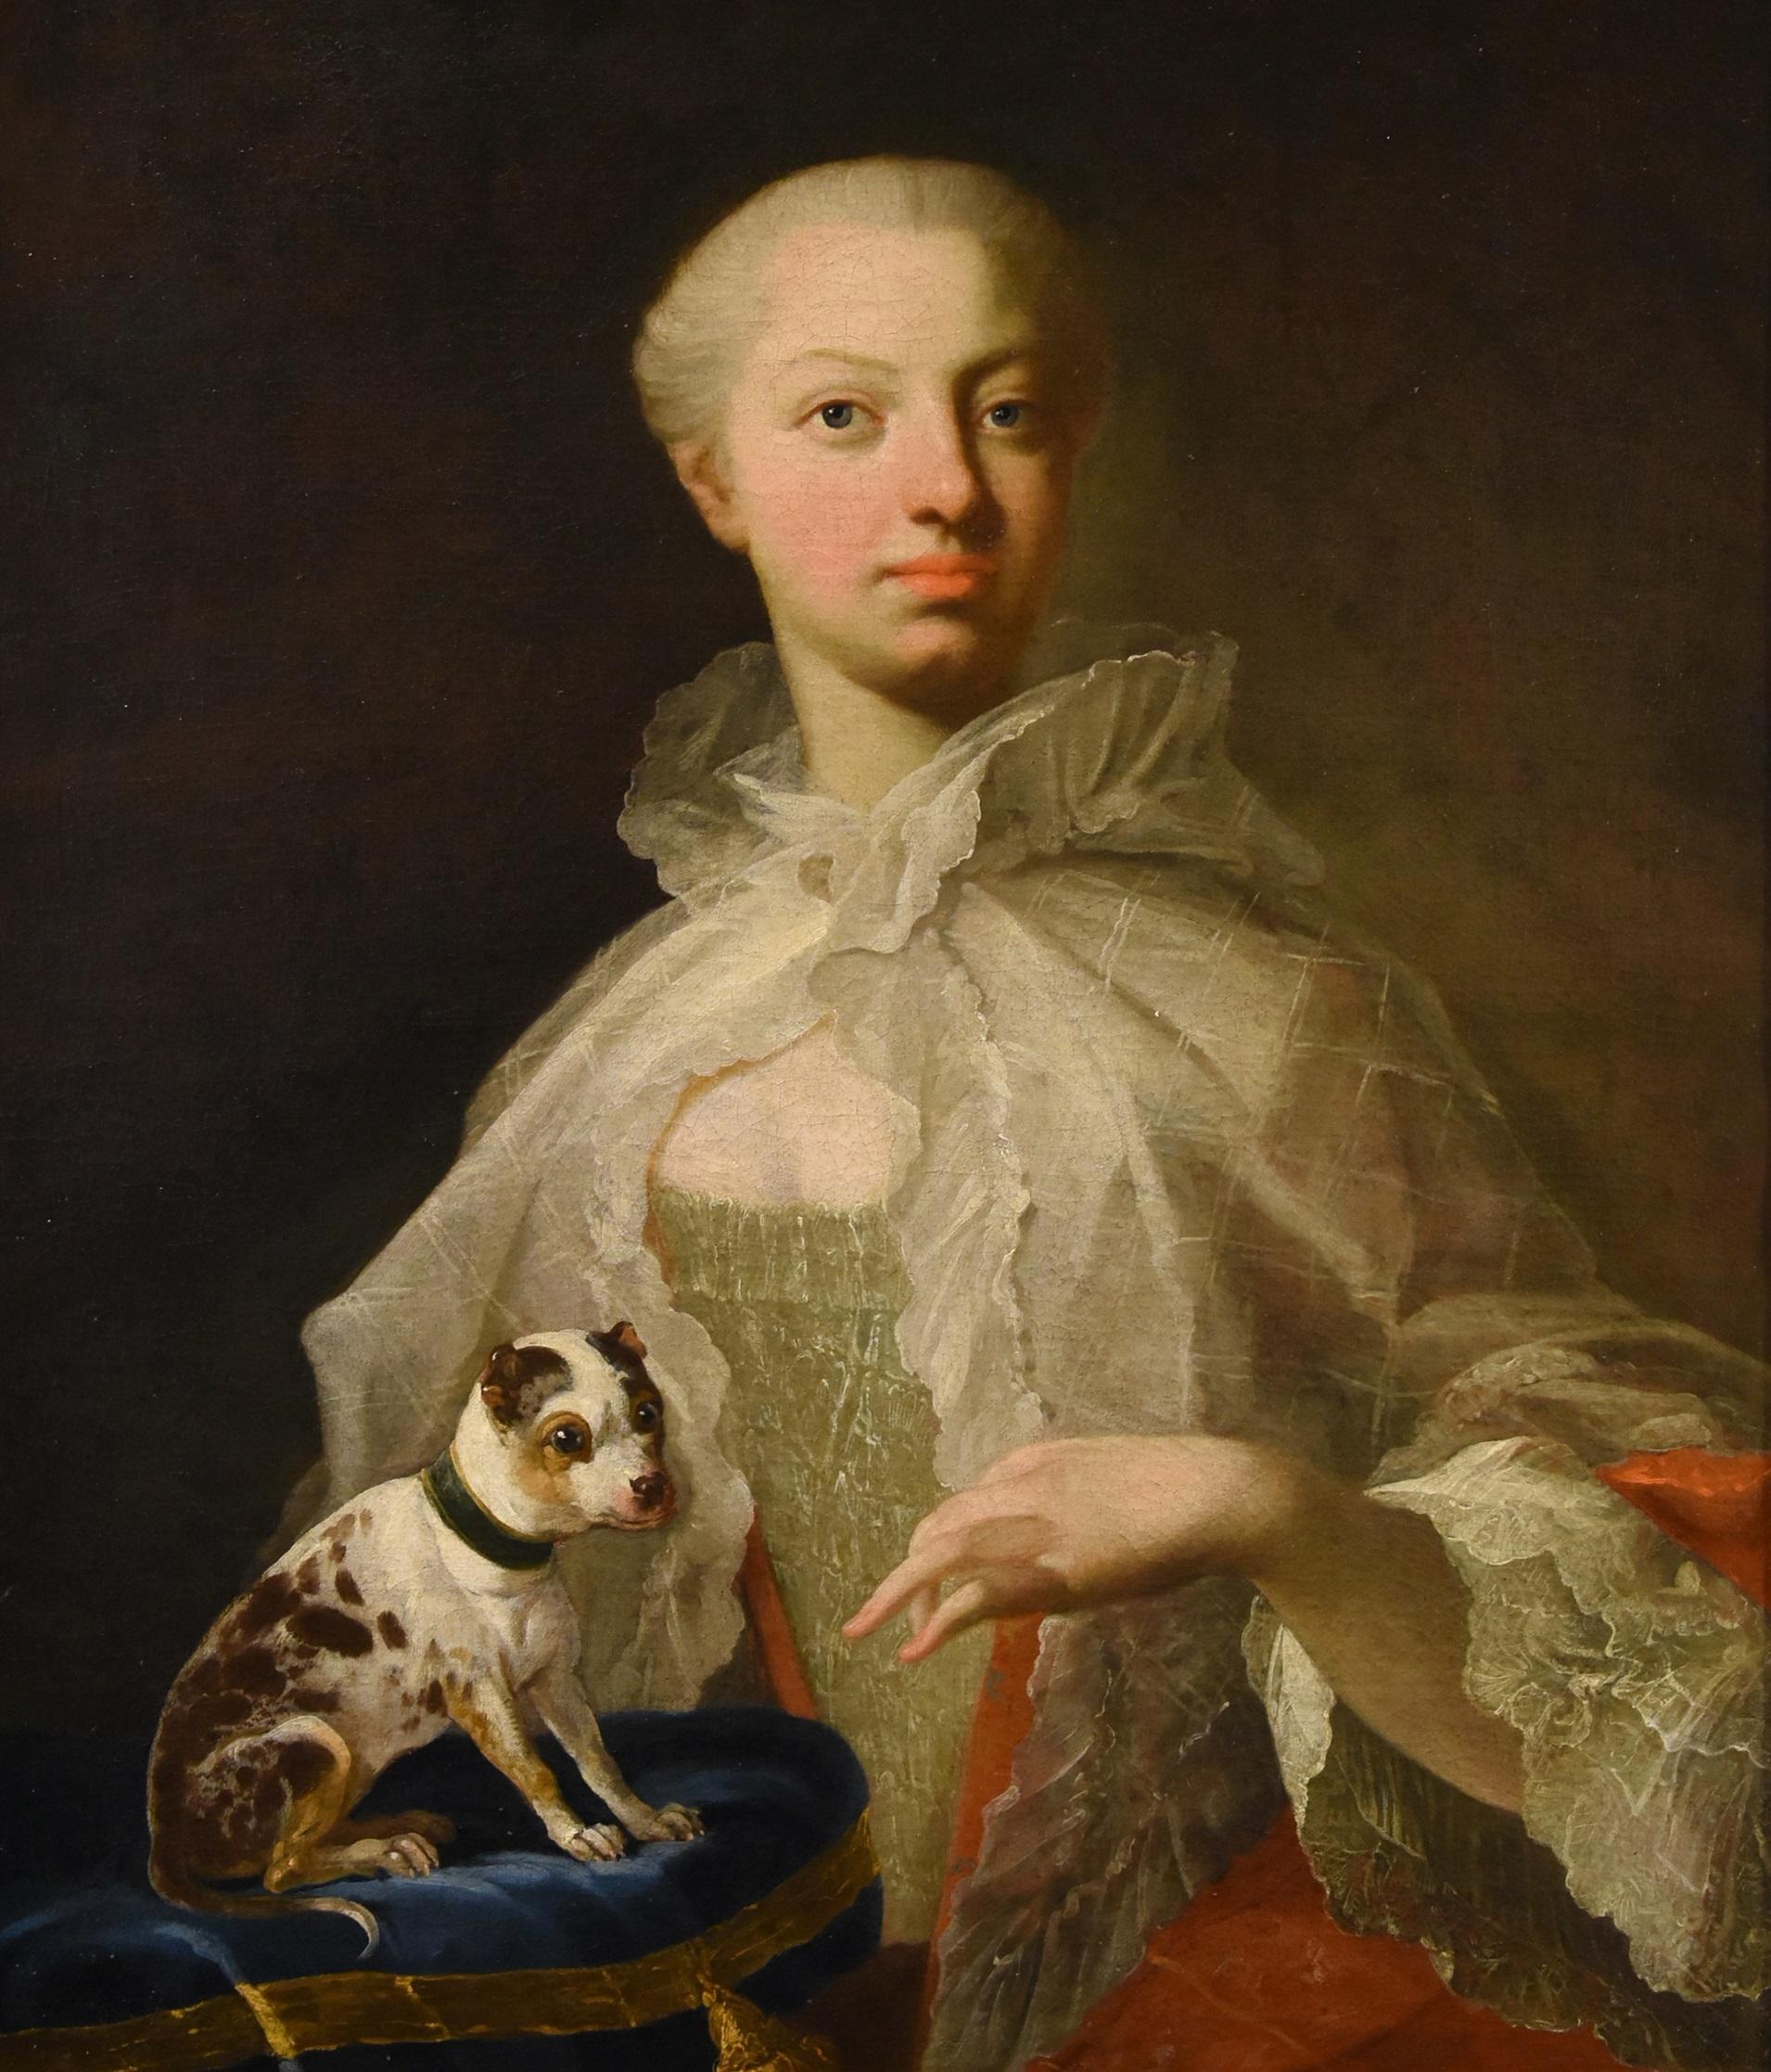 Portrait Noblewoman Dog Van Loo Peinture 18ème siècle Huile sur toile Grand maître Art - Painting de Louis Michel Van Loo (toulon 1707- Paris 1771)